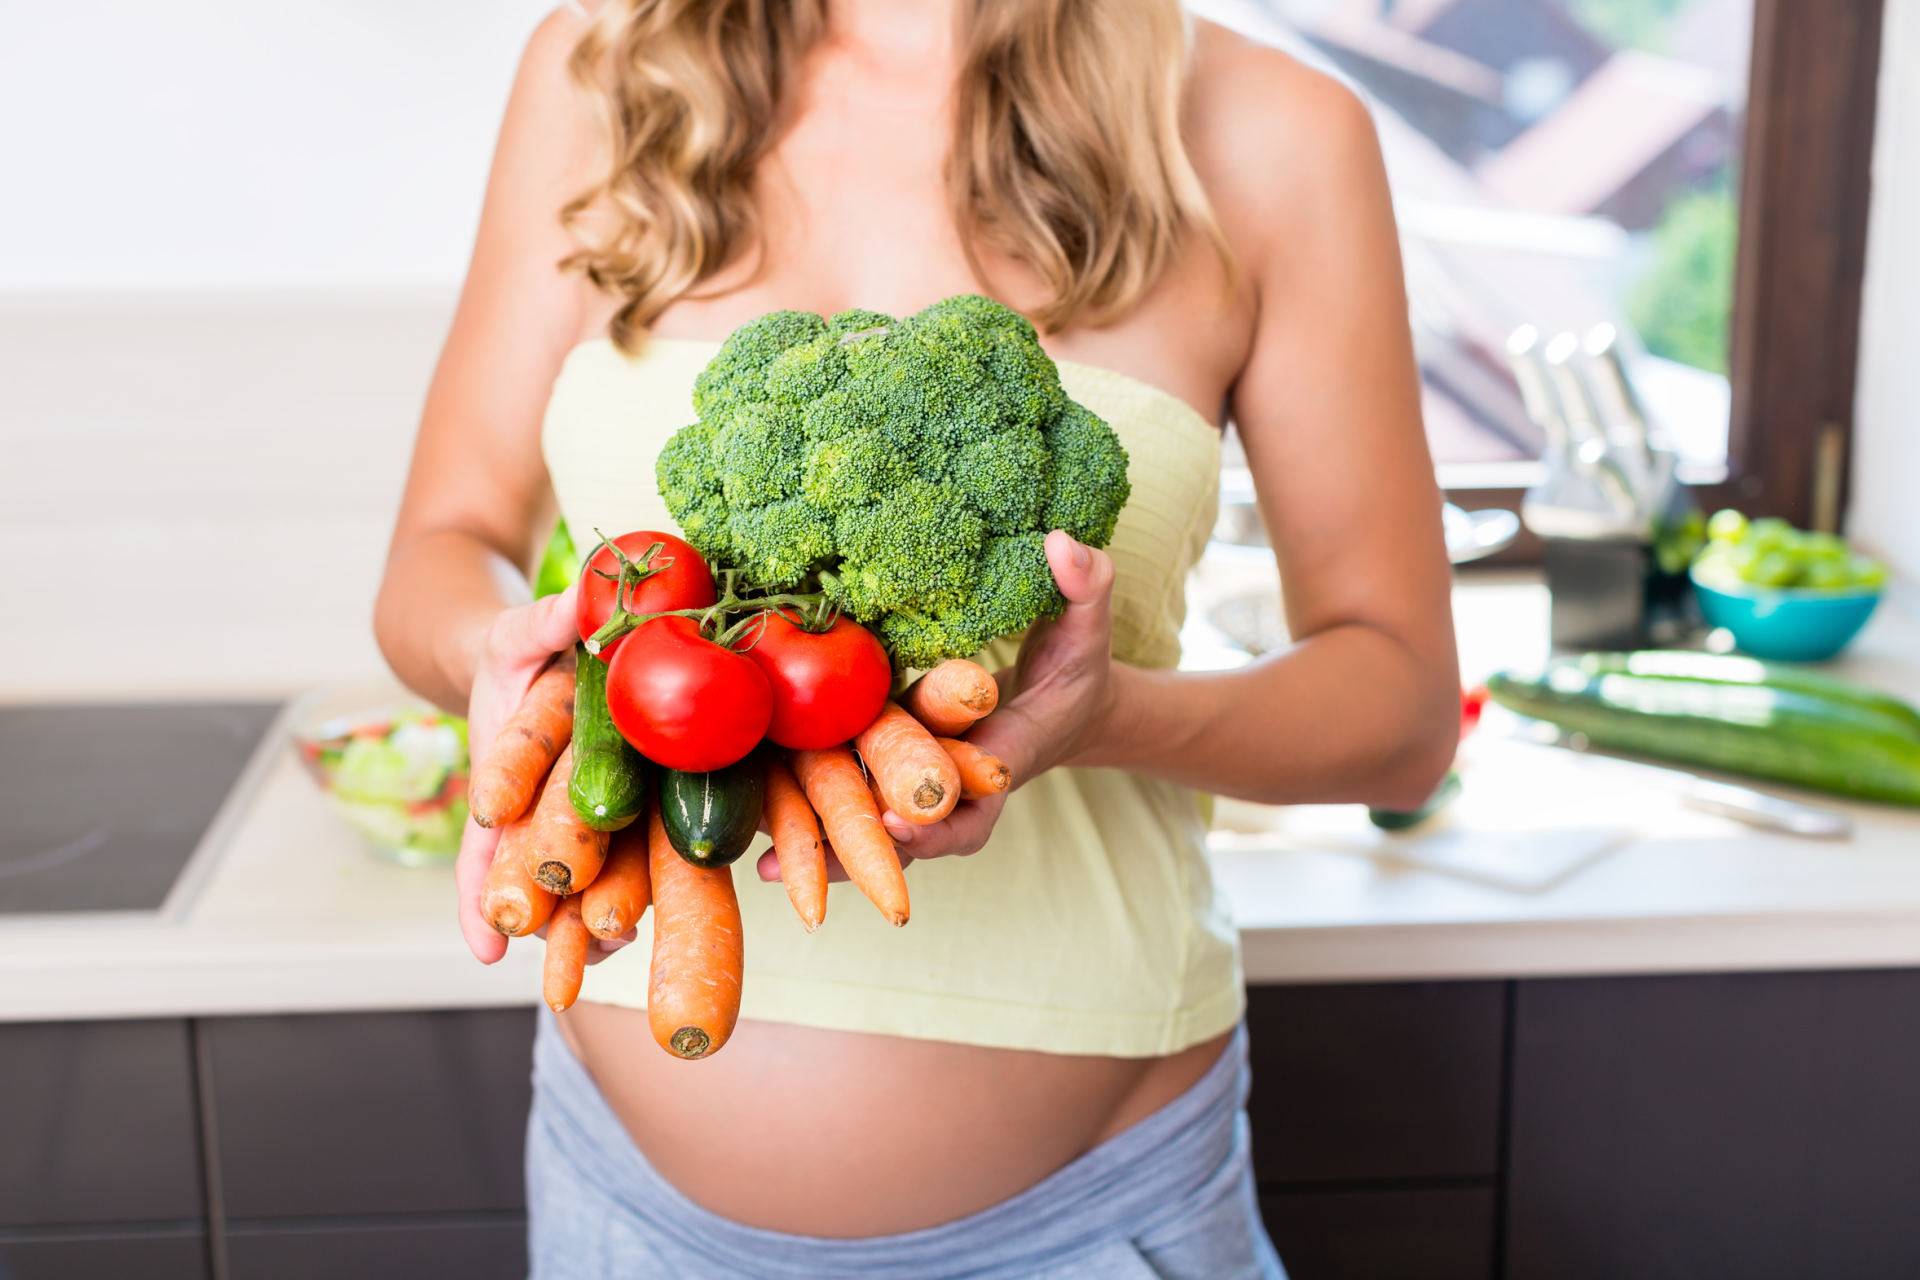 Что можно есть беременным в каждом триместре, рекомендации по употреблению различных блюд